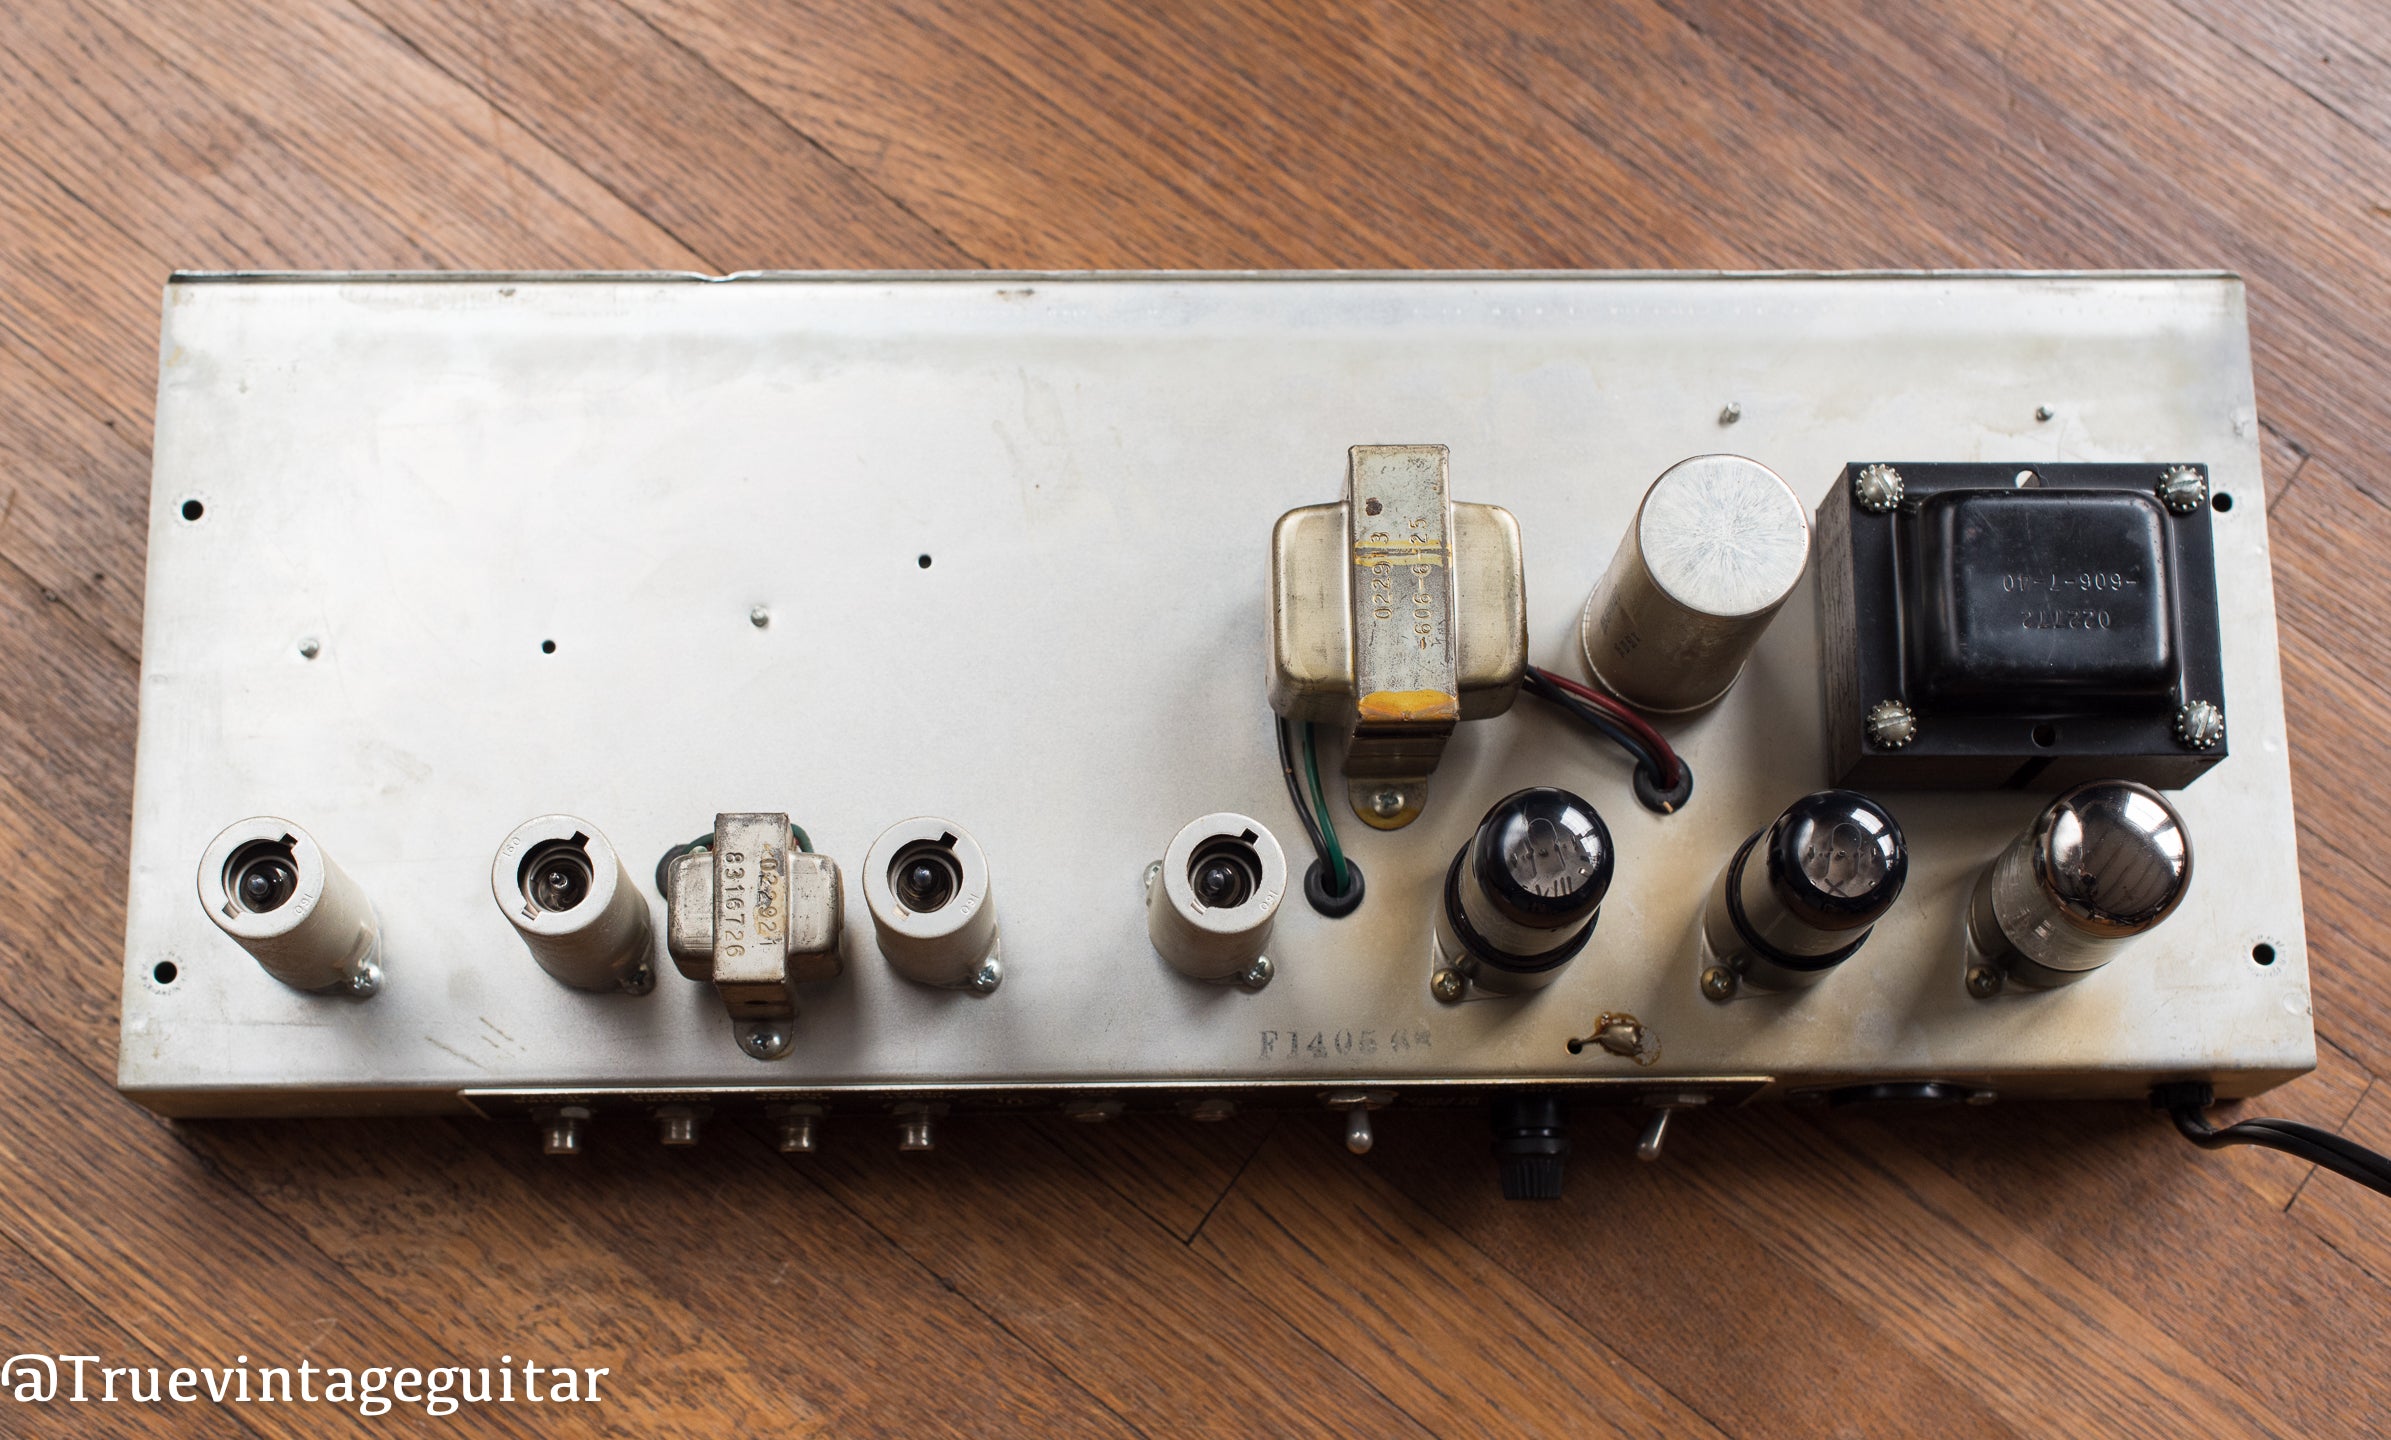 1968 Fender Princeton Reverb Amp drip edge black line, output transformer, power transformer, reverb transformer